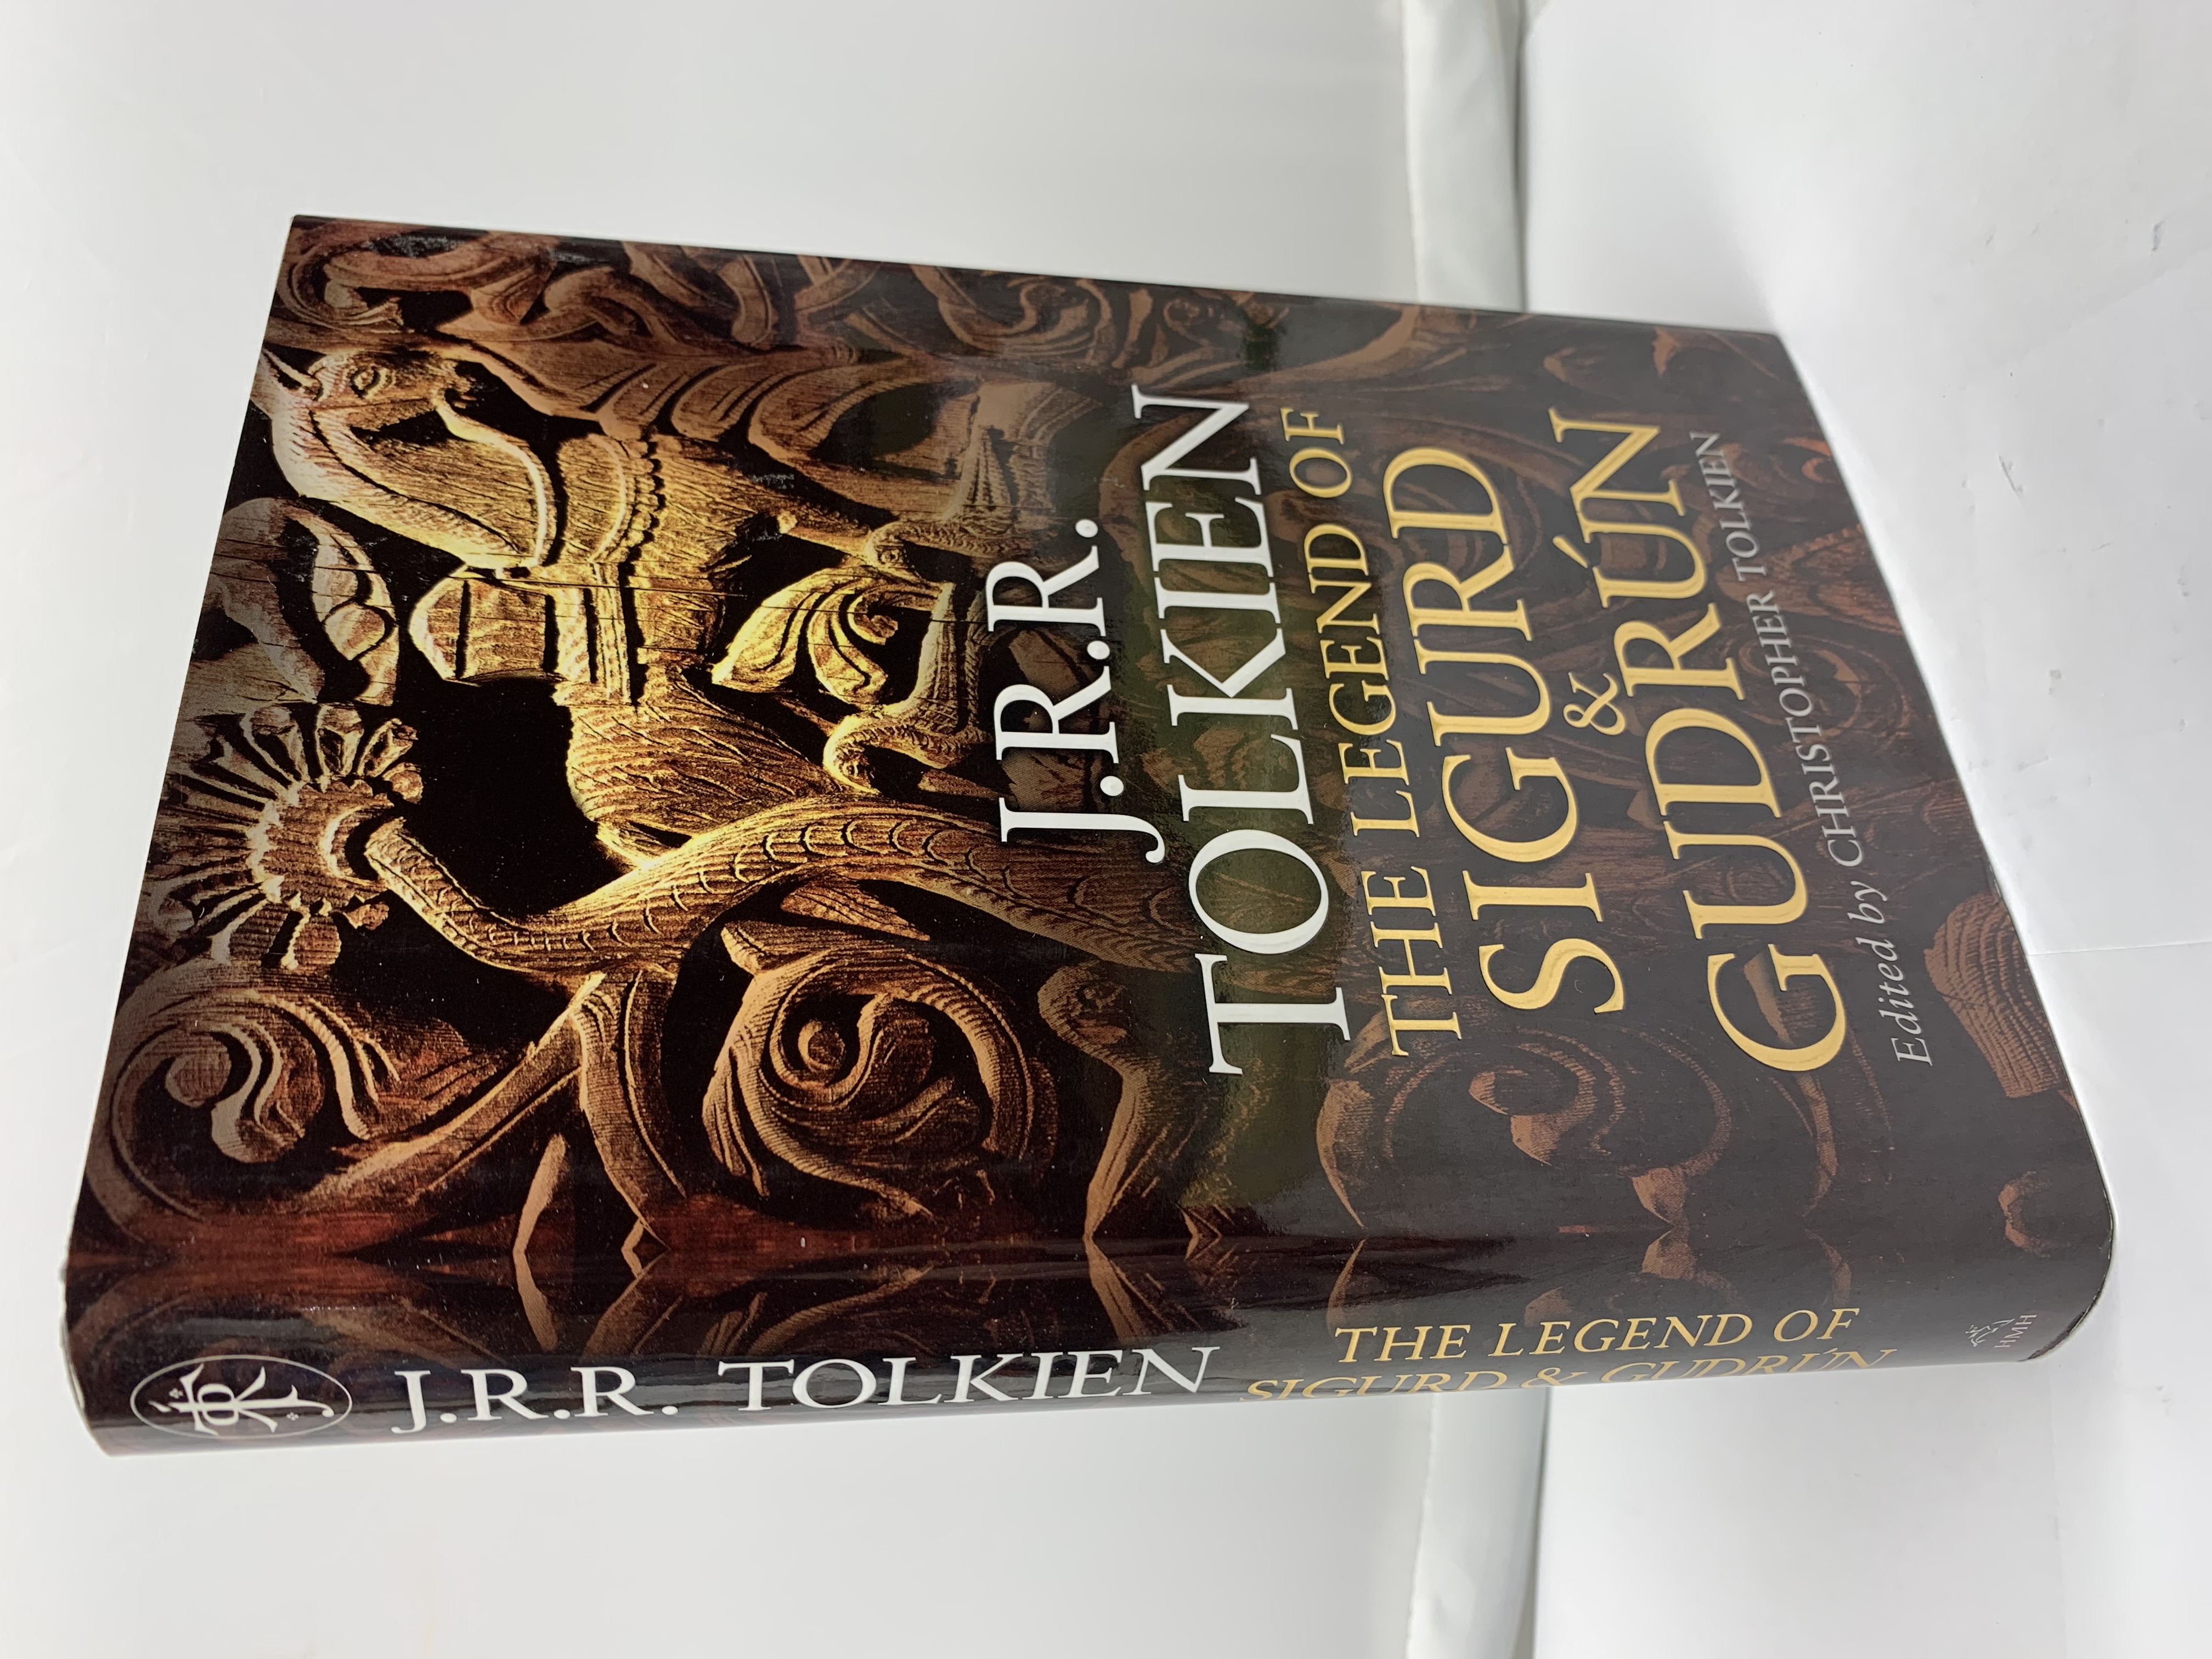 The Legend of Sigurd and Gudrun - Tolkien, J.R.R.